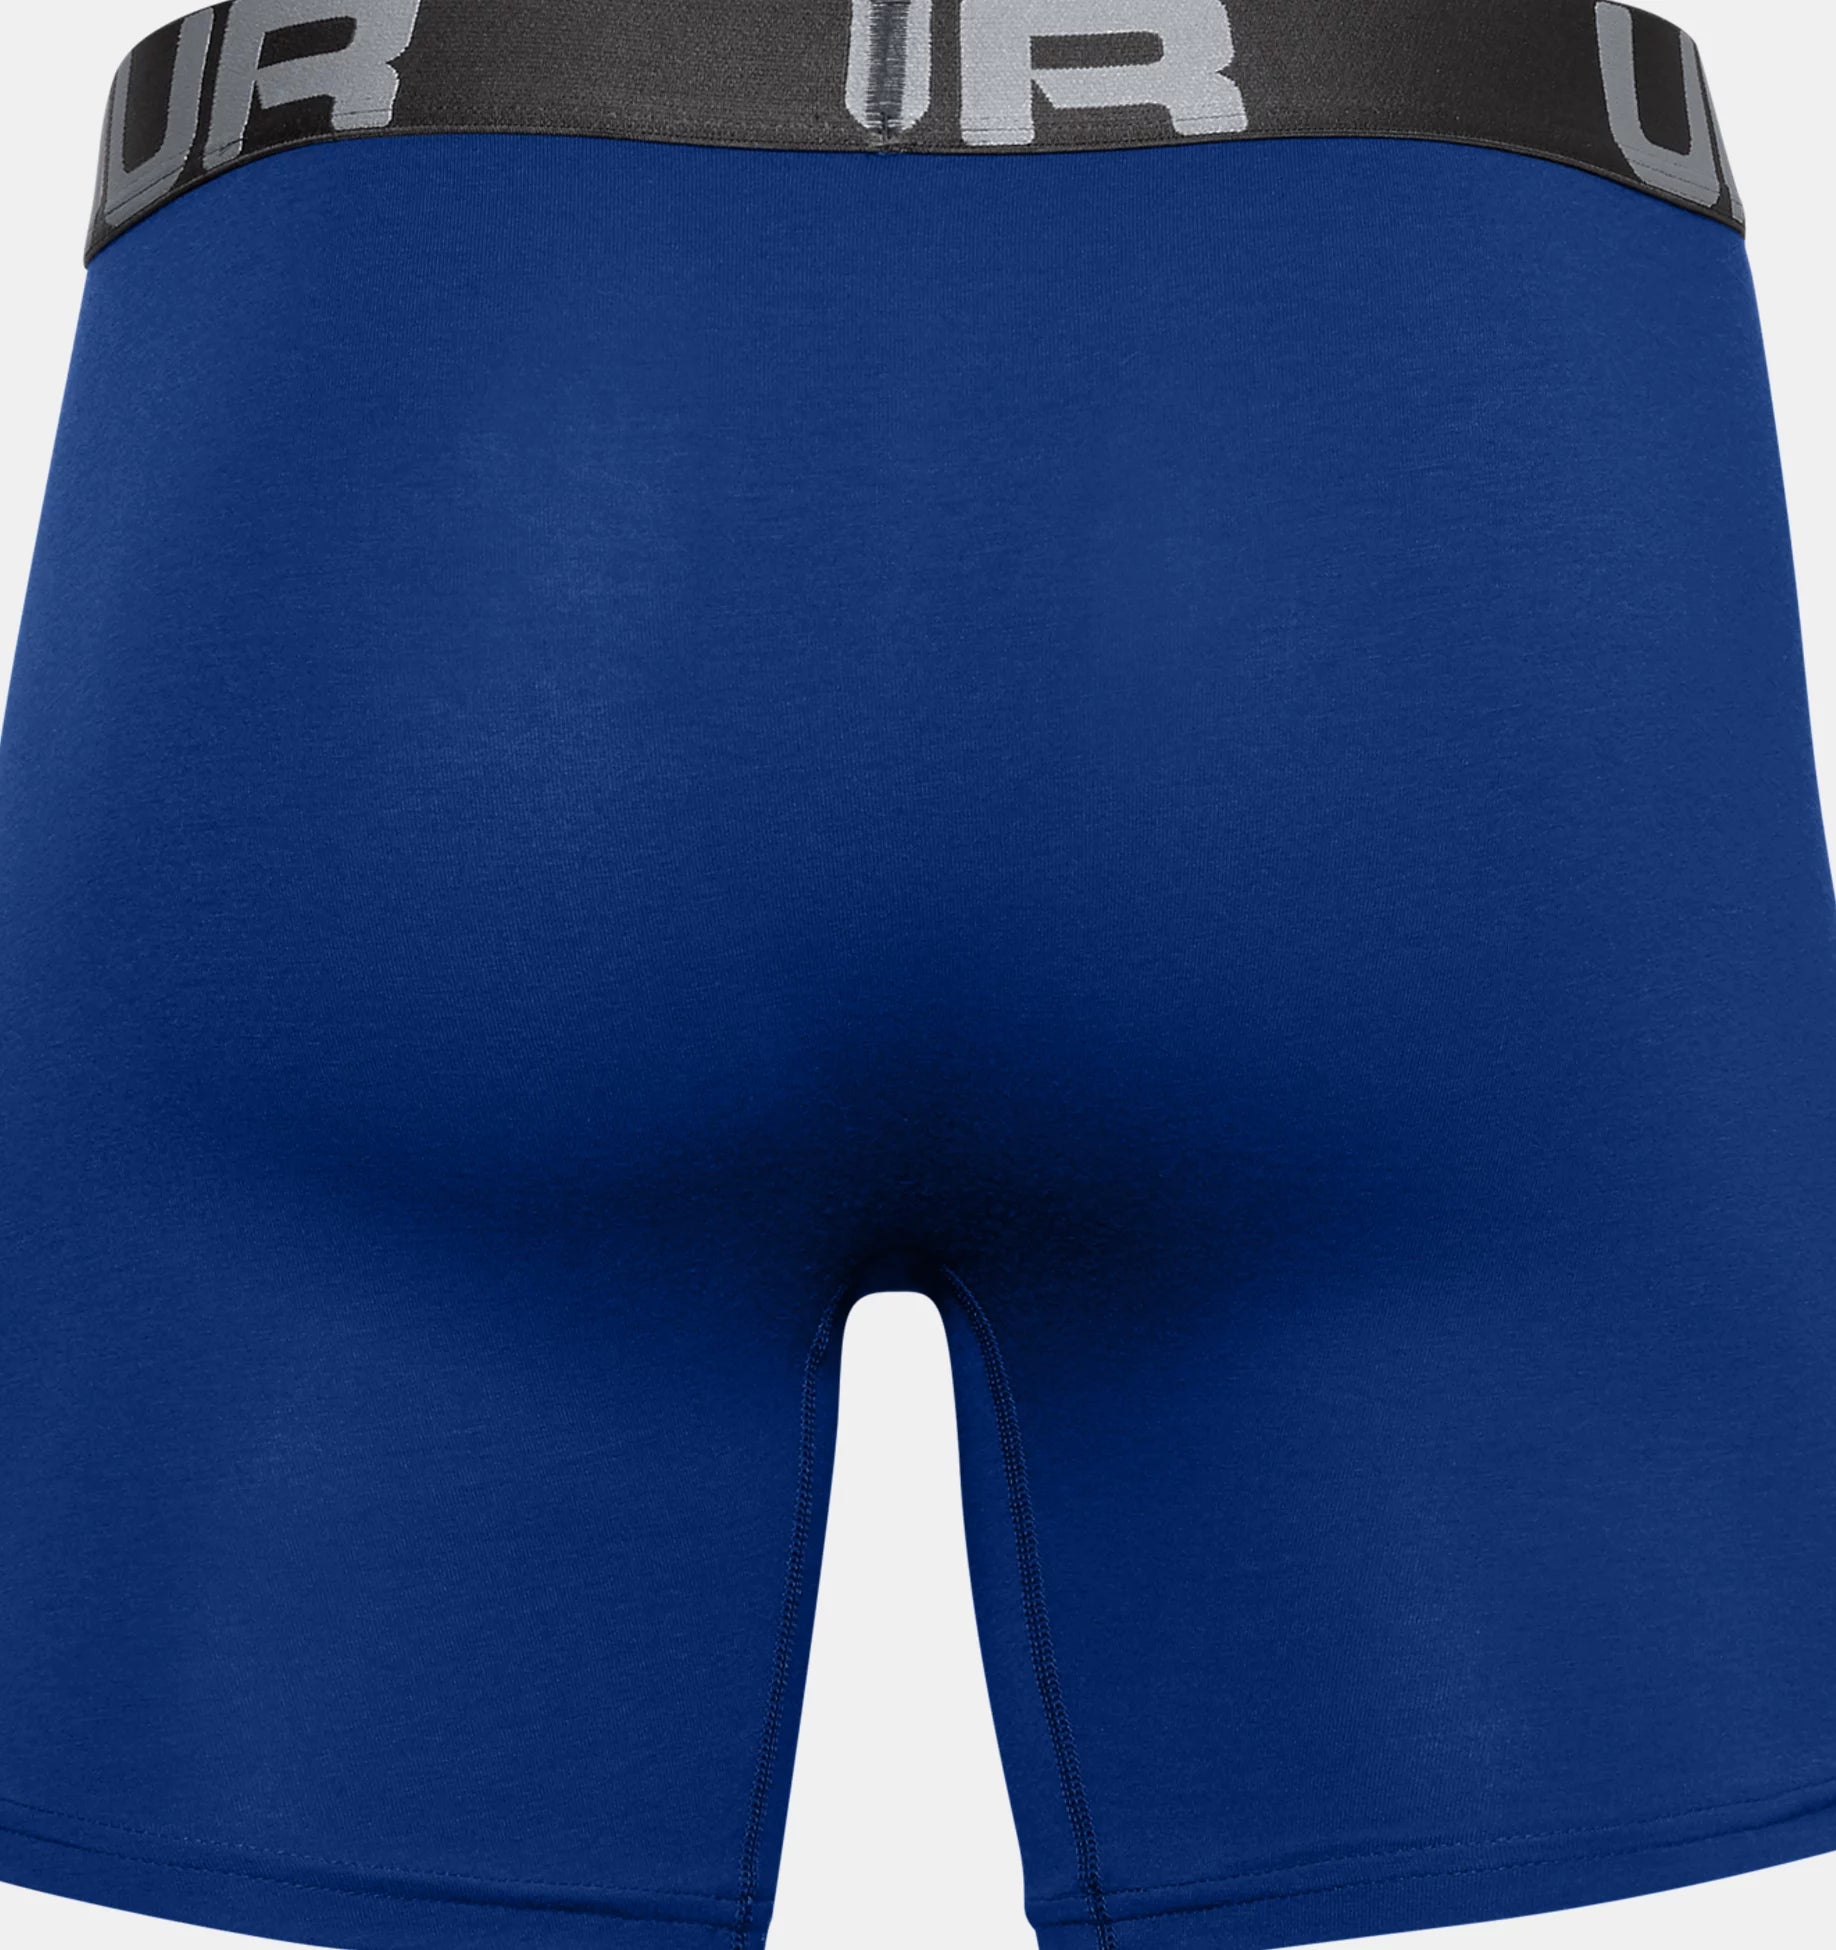 Boxerjock Charged Cotton 6" pour hommes – paquet de 3 - blue